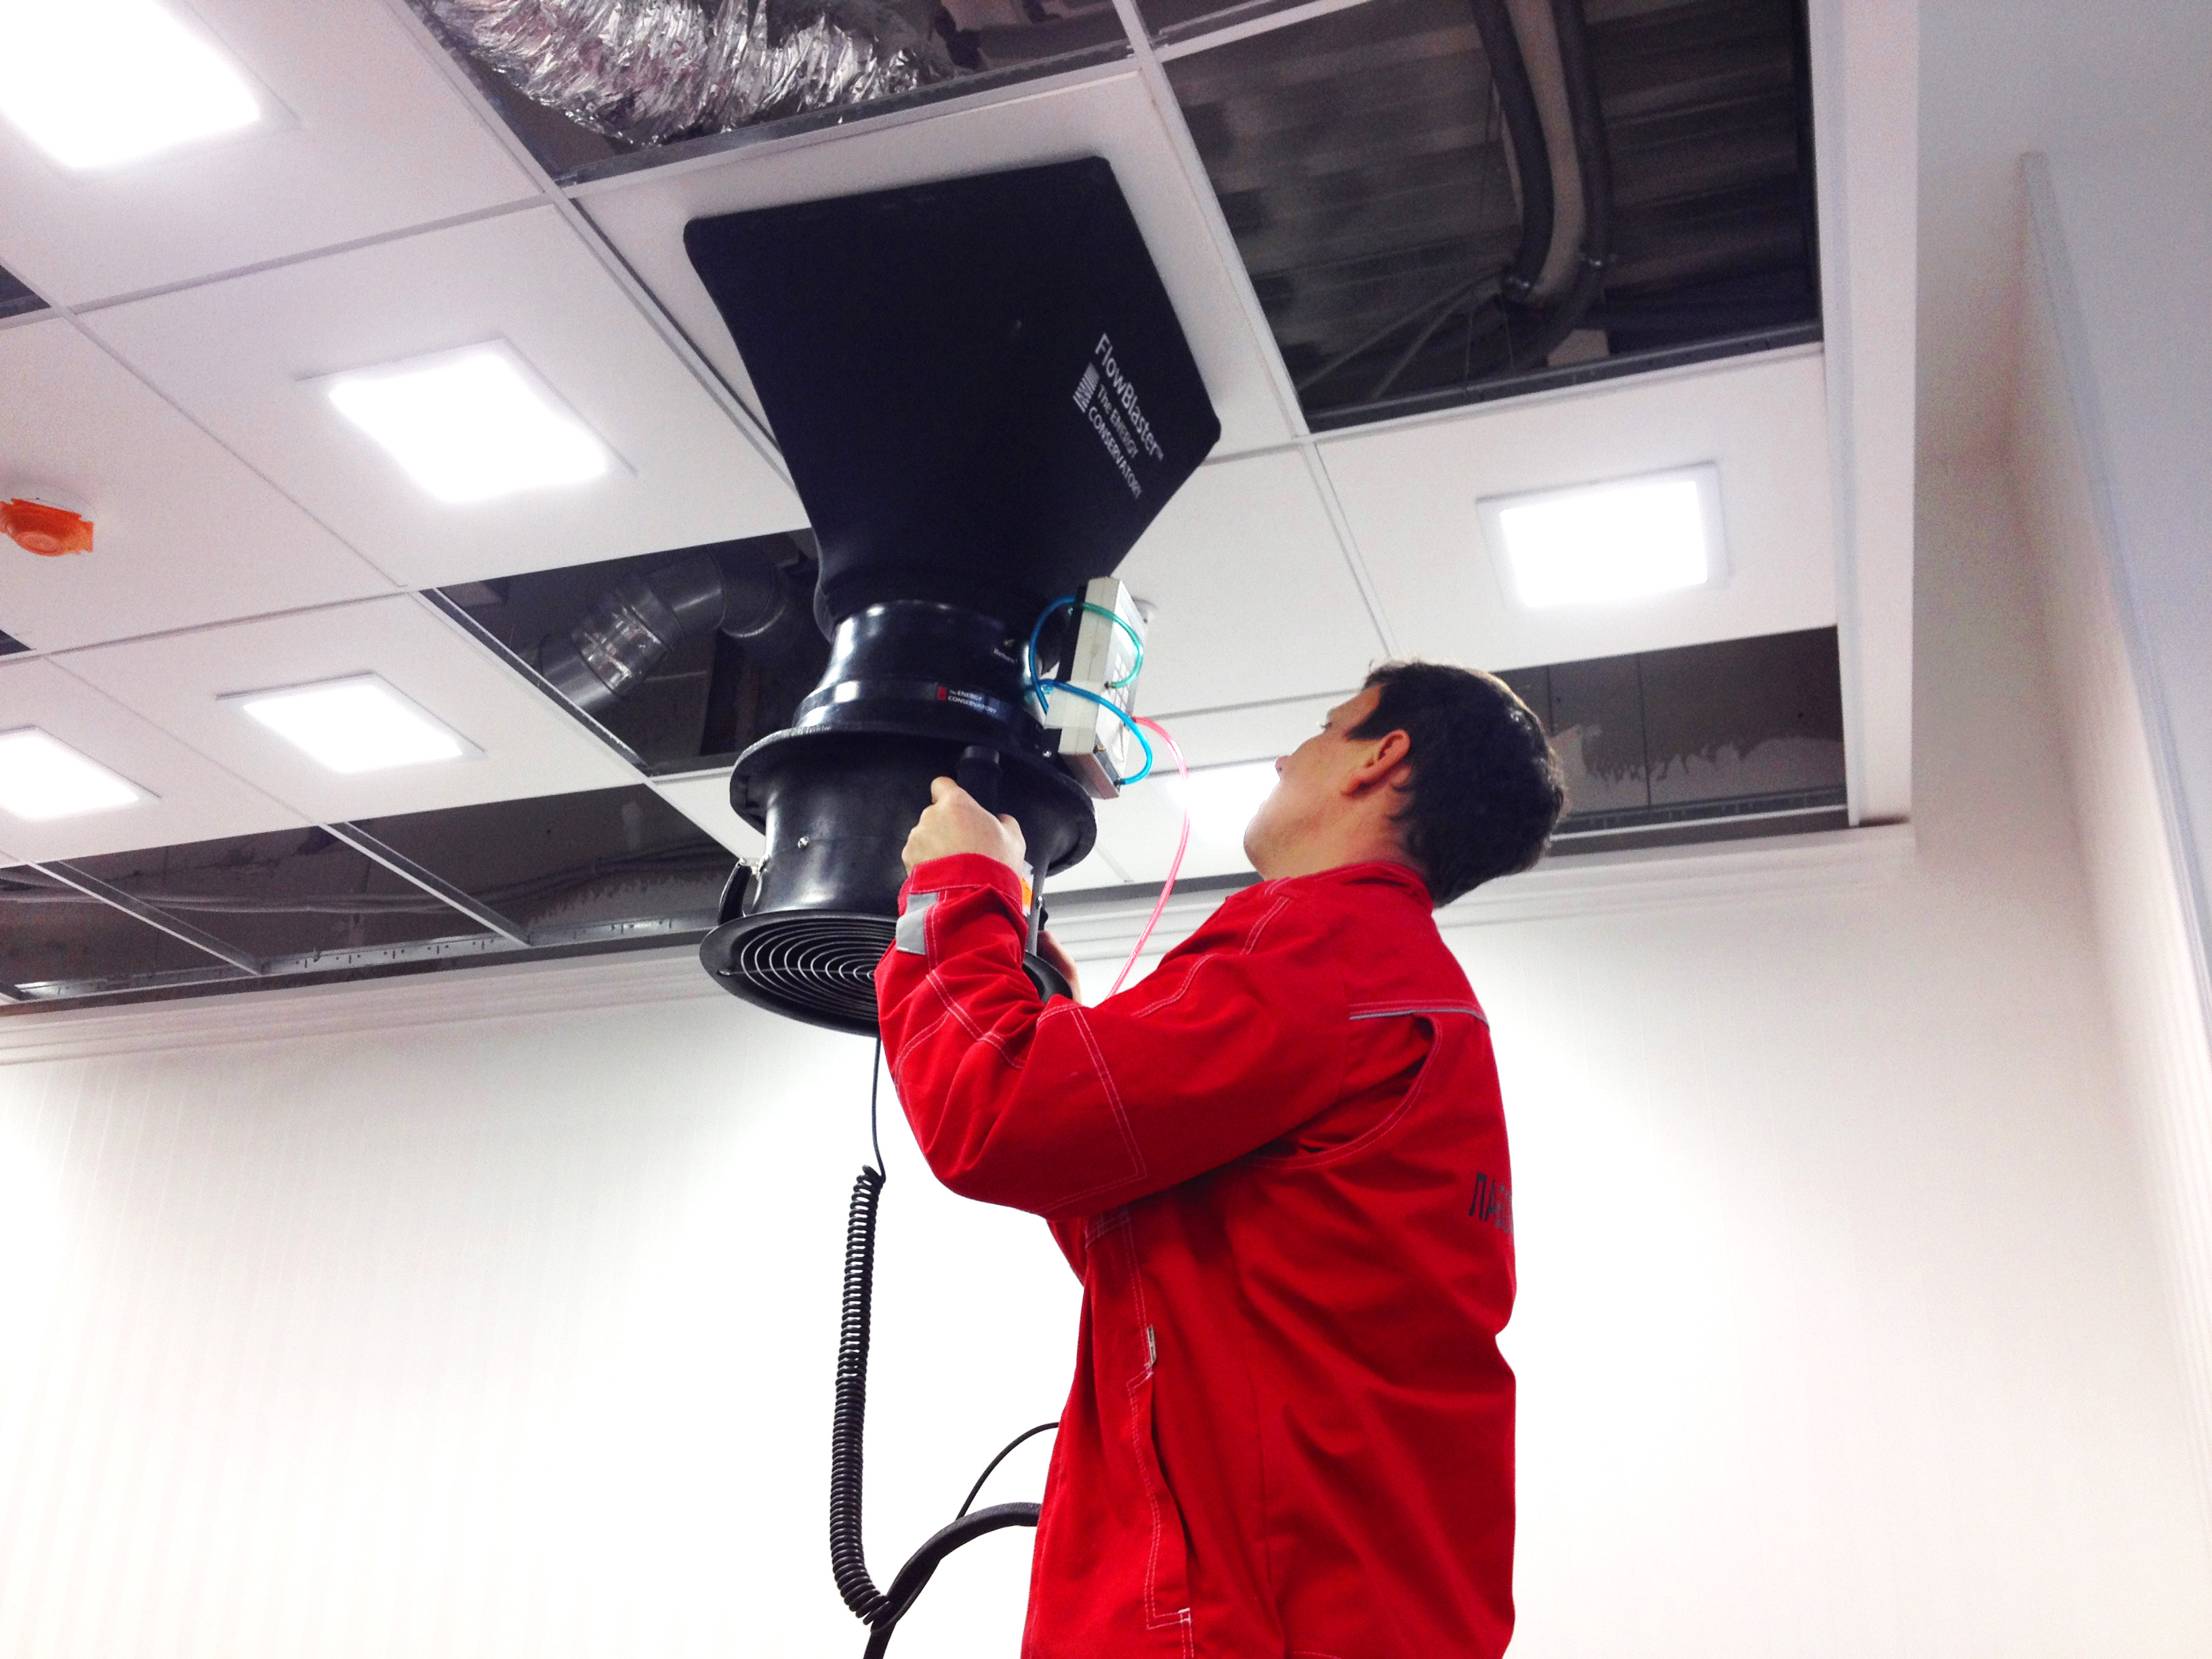 Измерения расхода воздуха на воздухораспределительном устройстве системы приточной вентиляции при помощи установки Duct Blaster Flow Blaster